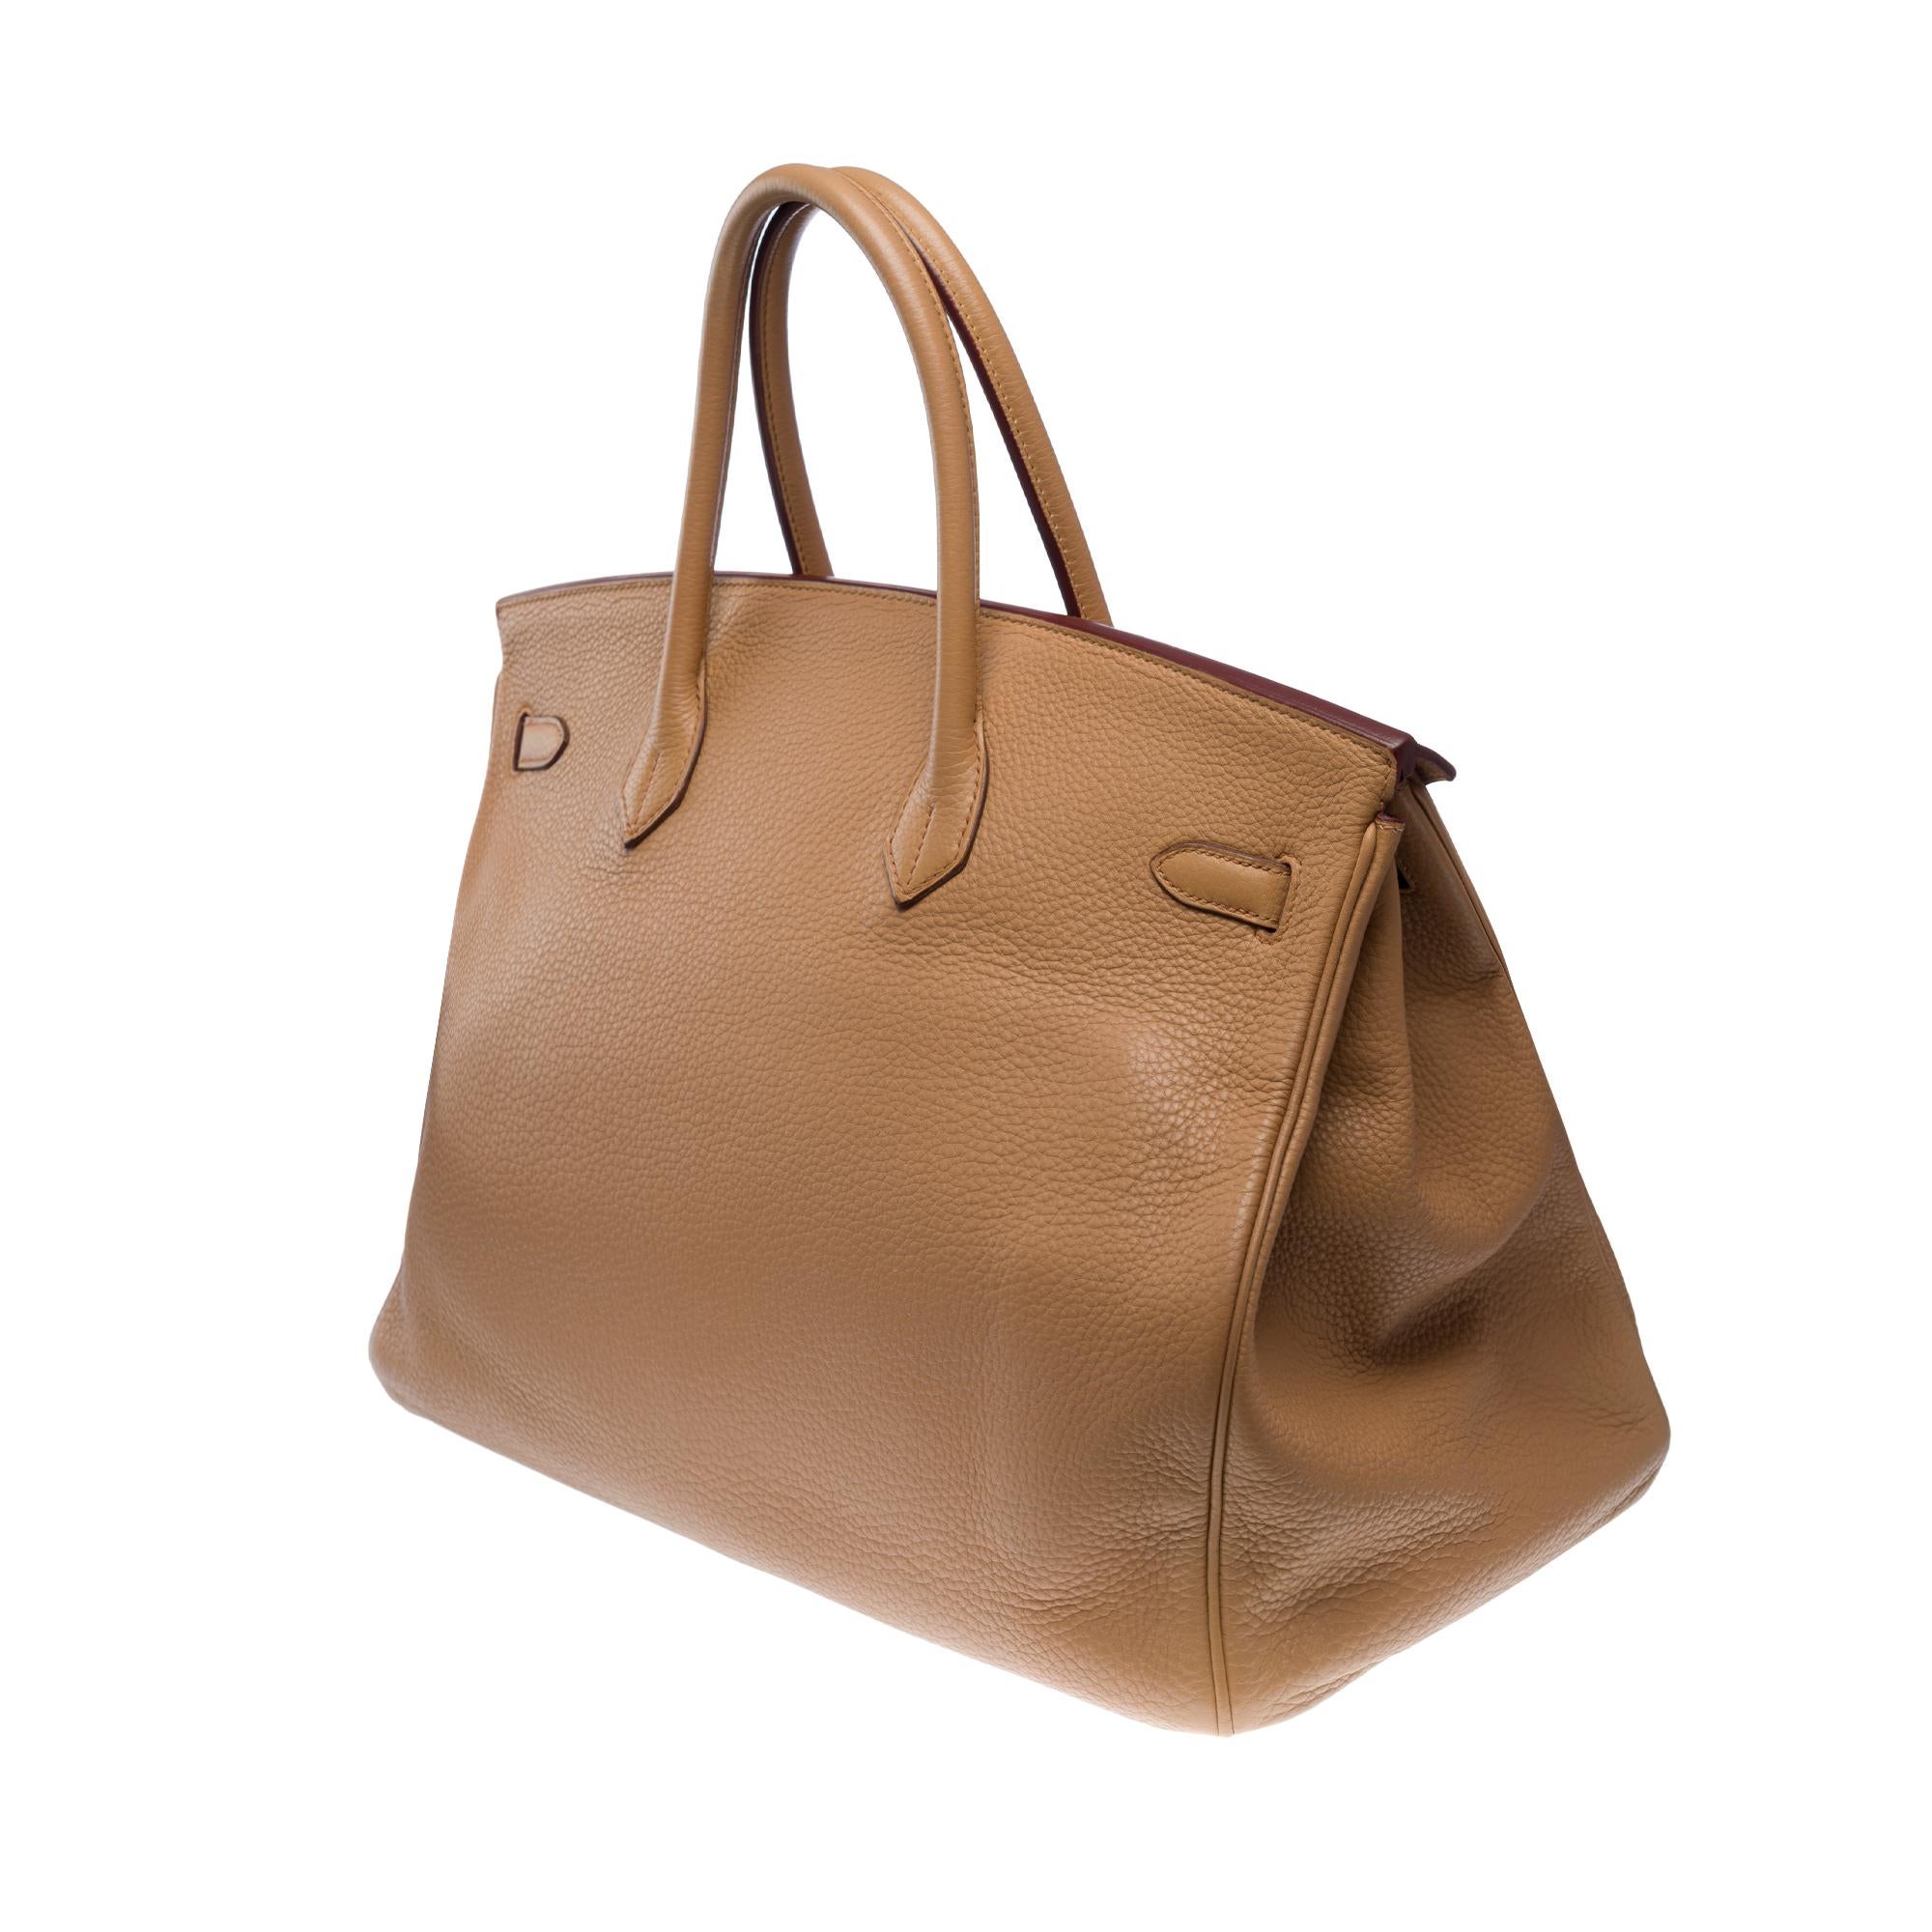 Hermes Birkin 40 handbag in Tabac Togo leather, SHW For Sale 2